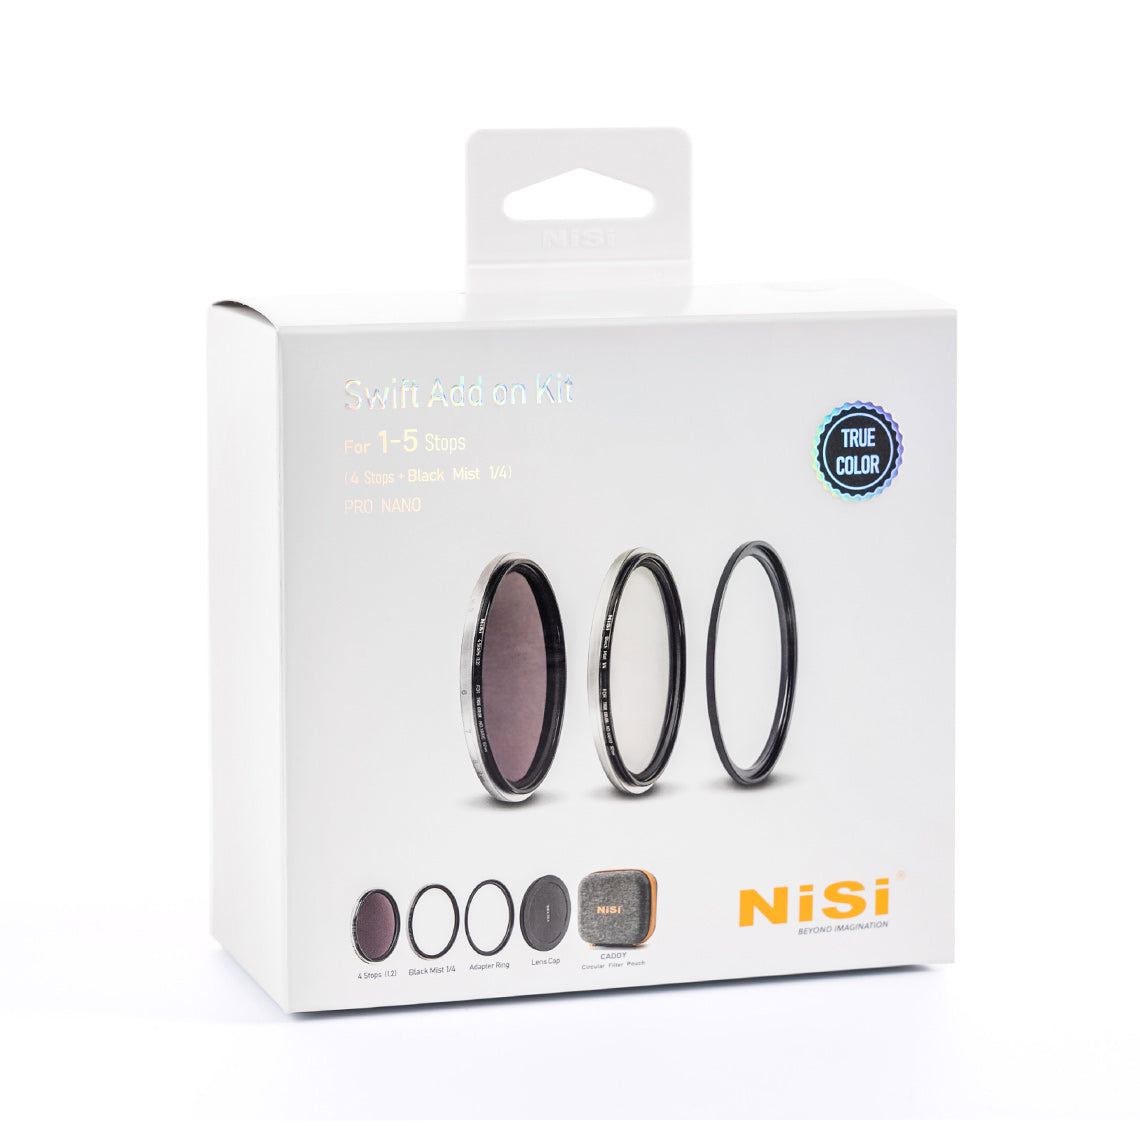 NiSi 動画撮影用フィルター SWIFT アドオンキット 95mm-